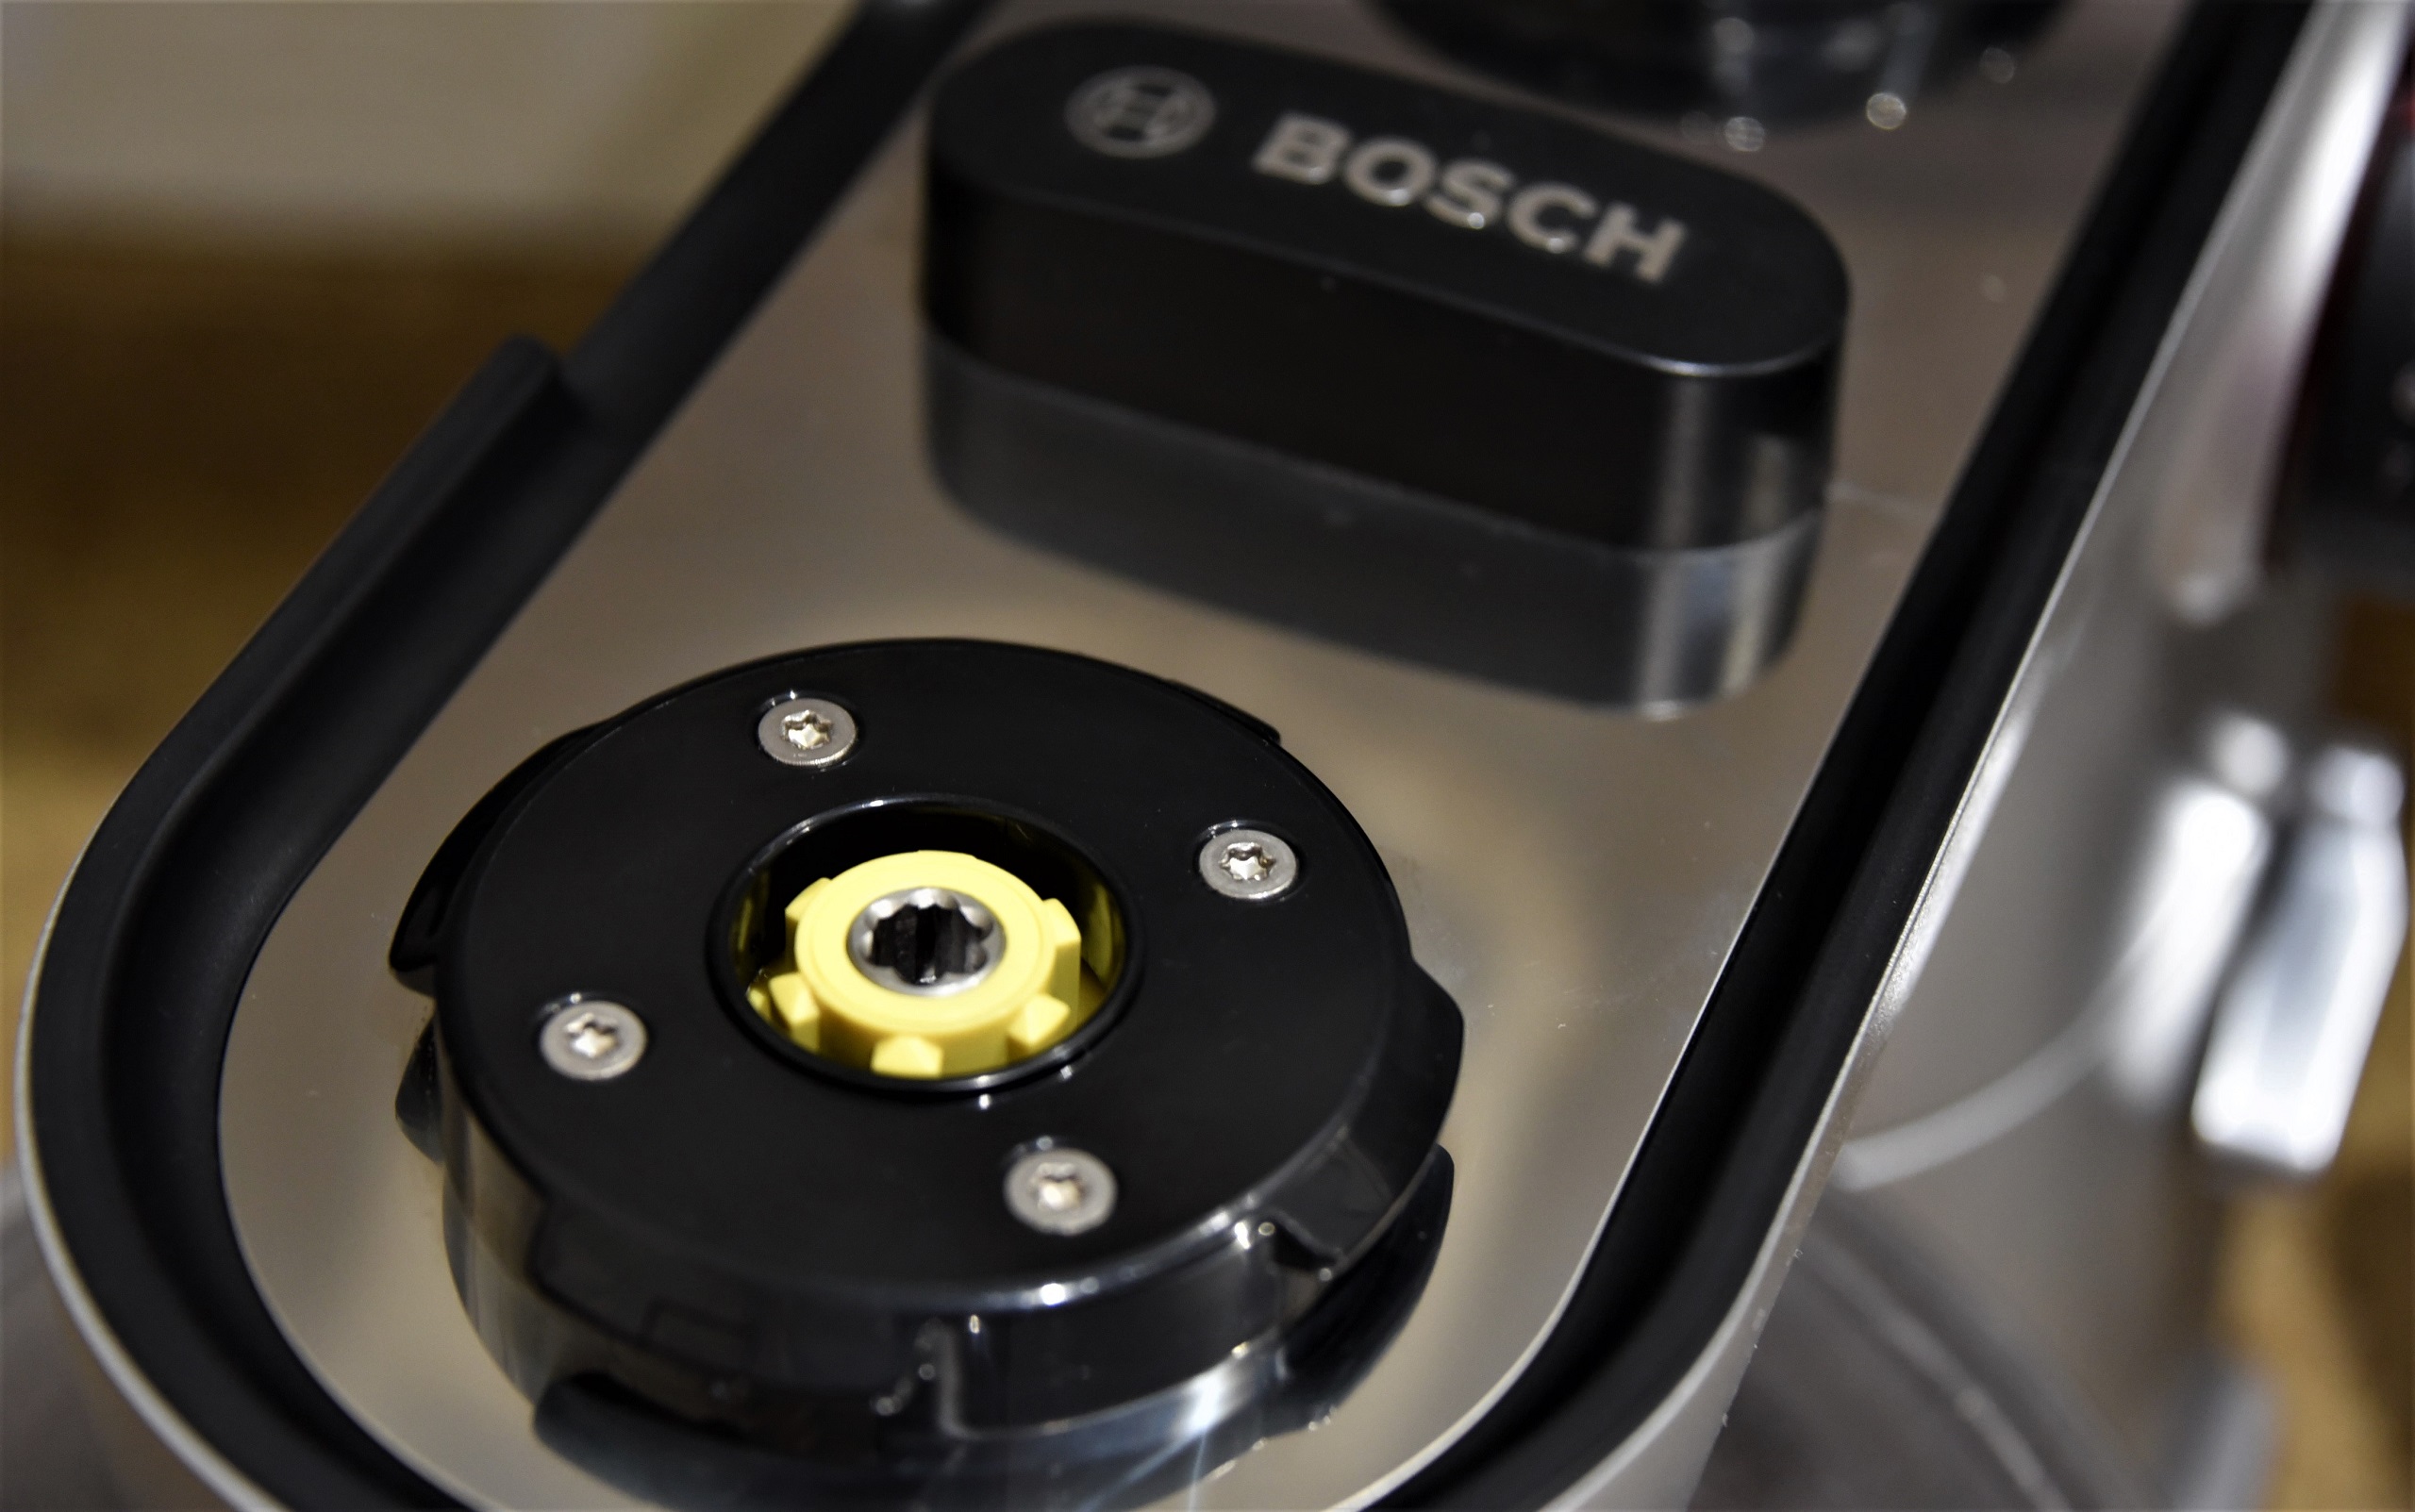 передний привод планетарного миксера Bosch